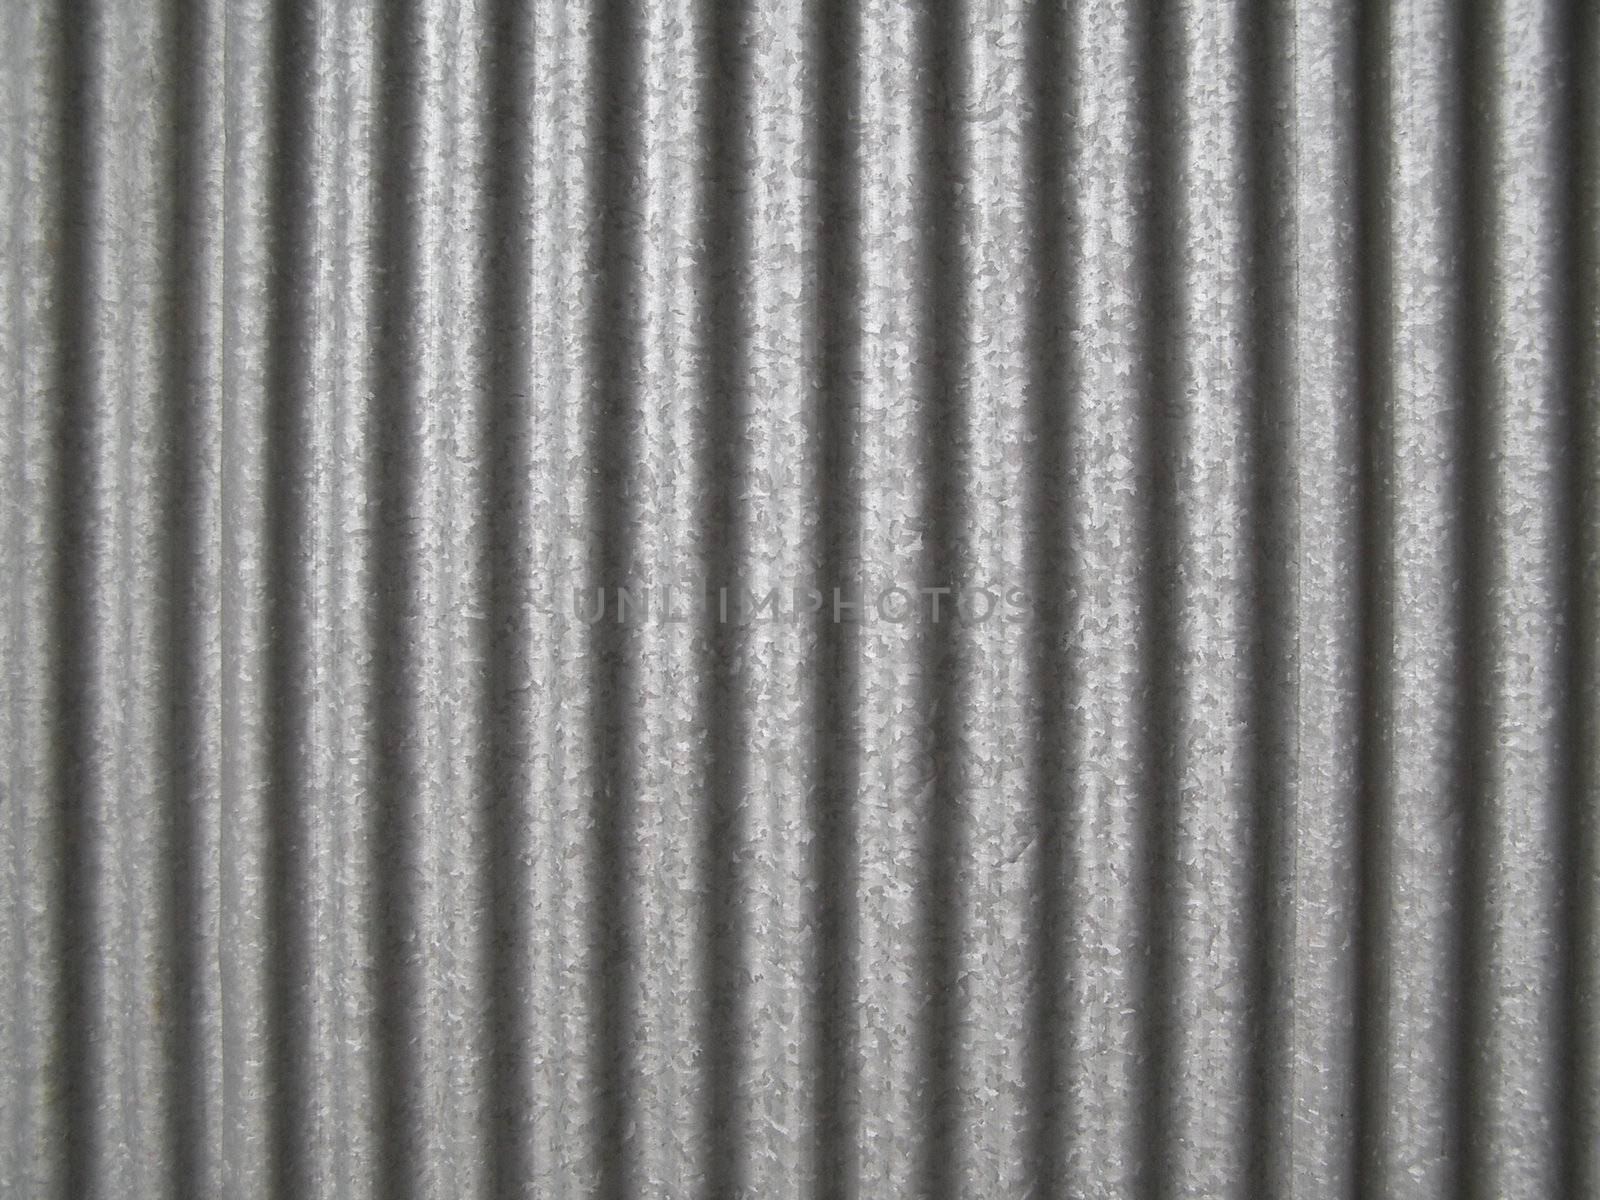 Corrugated steel by claudiodivizia